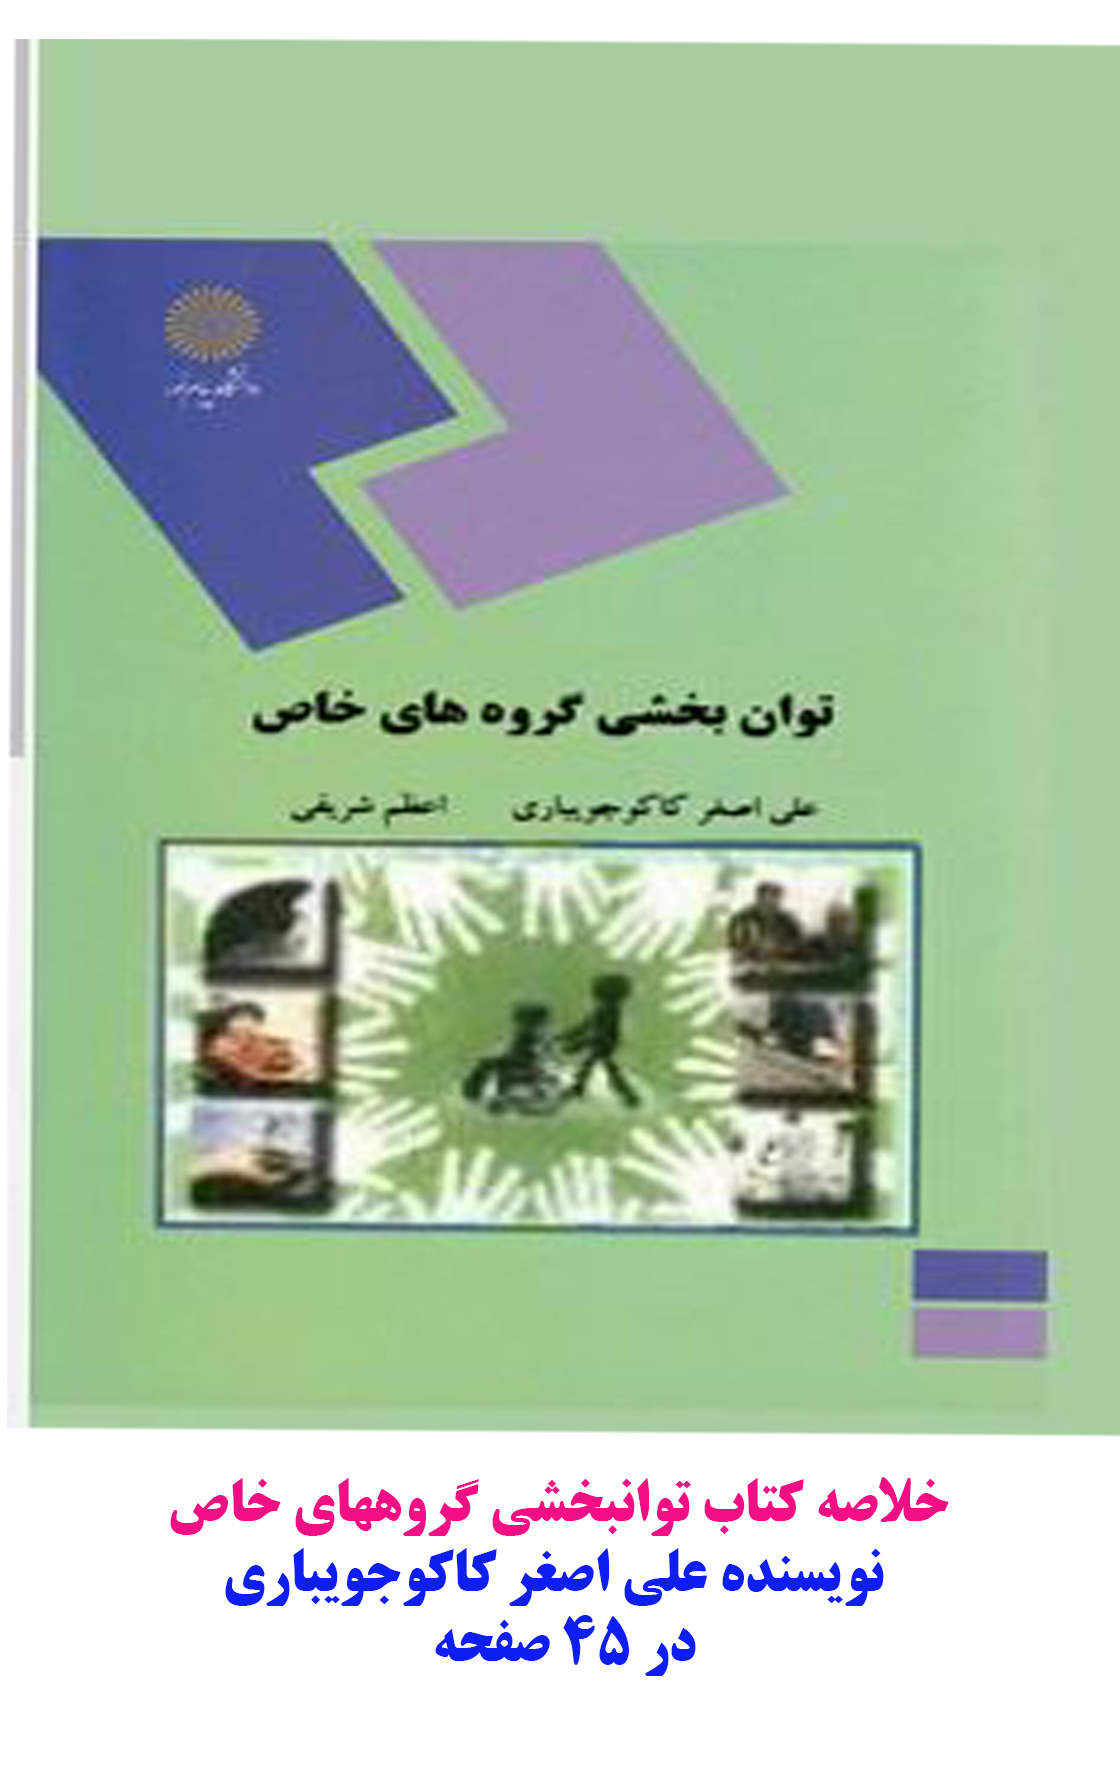 خلاصه کتاب توانبخشی گروههای خاص نویسنده علی اصغر کاکوجویباری